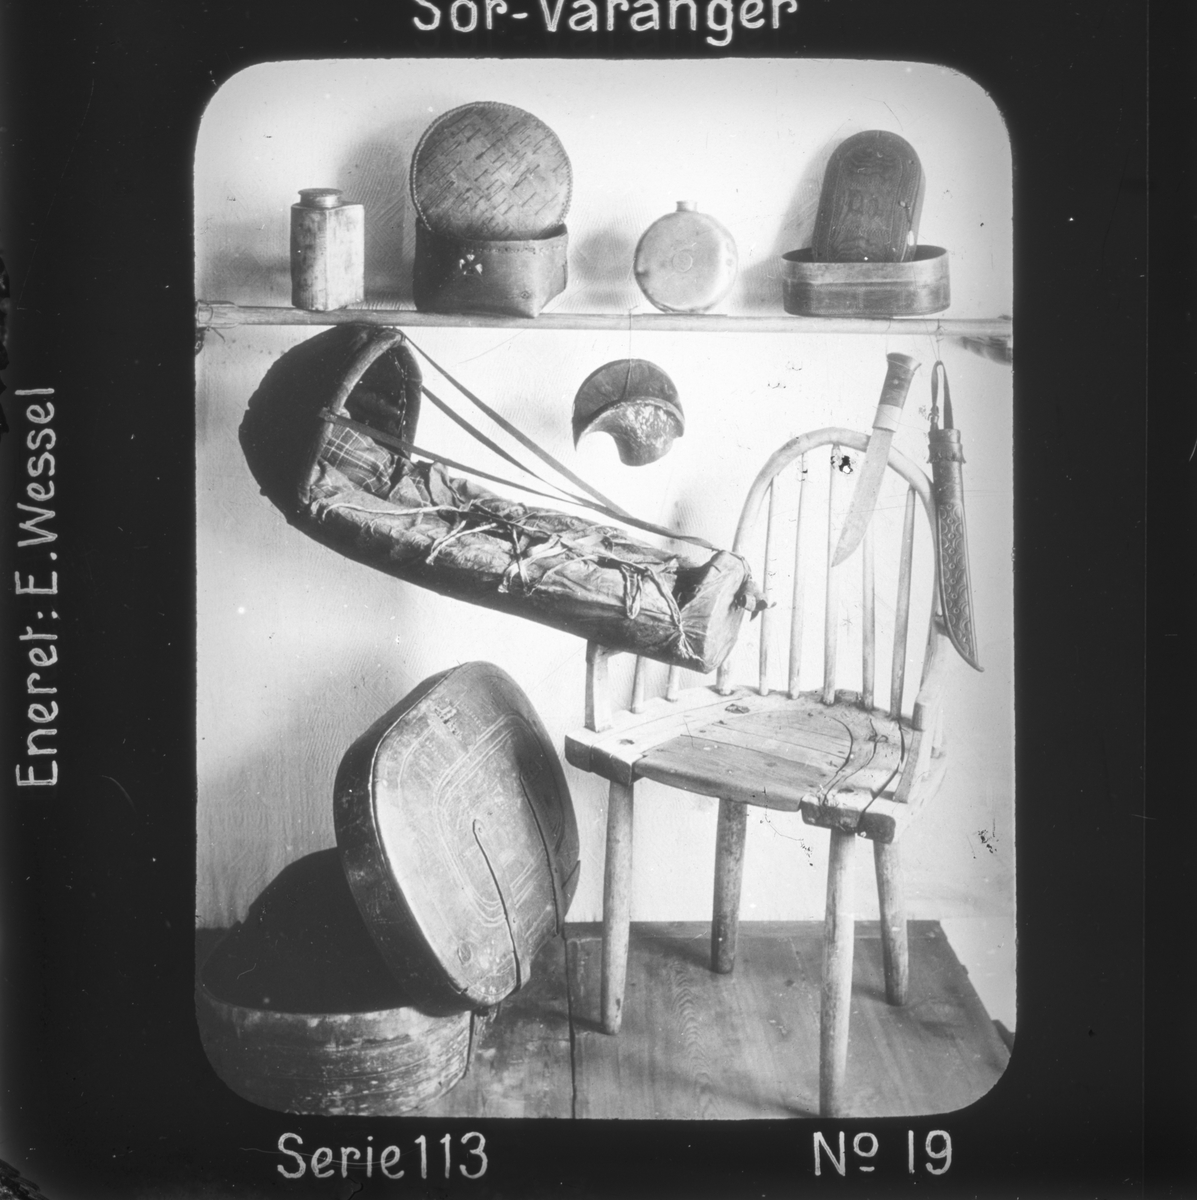 Eldre samiske gjenstander, se Andre opplysninger.
Motivet har nr.19 i lysbildeforedraget kalt  "I lappernes land - Sør-Varanger", utgitt i Nerliens Lysbilledserier, serie nr 113. 